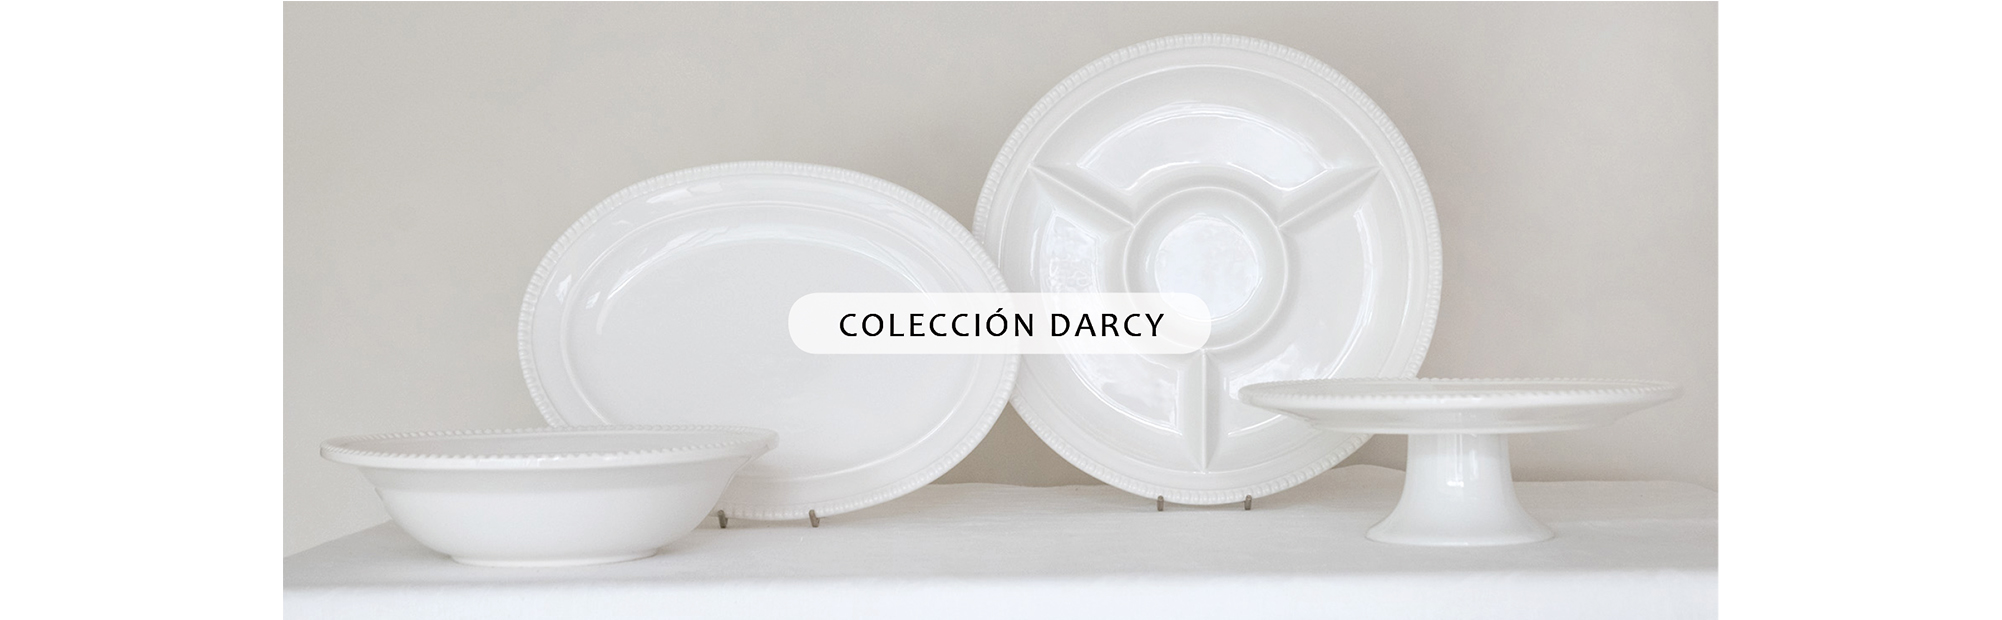 Colección Darcy.jpg